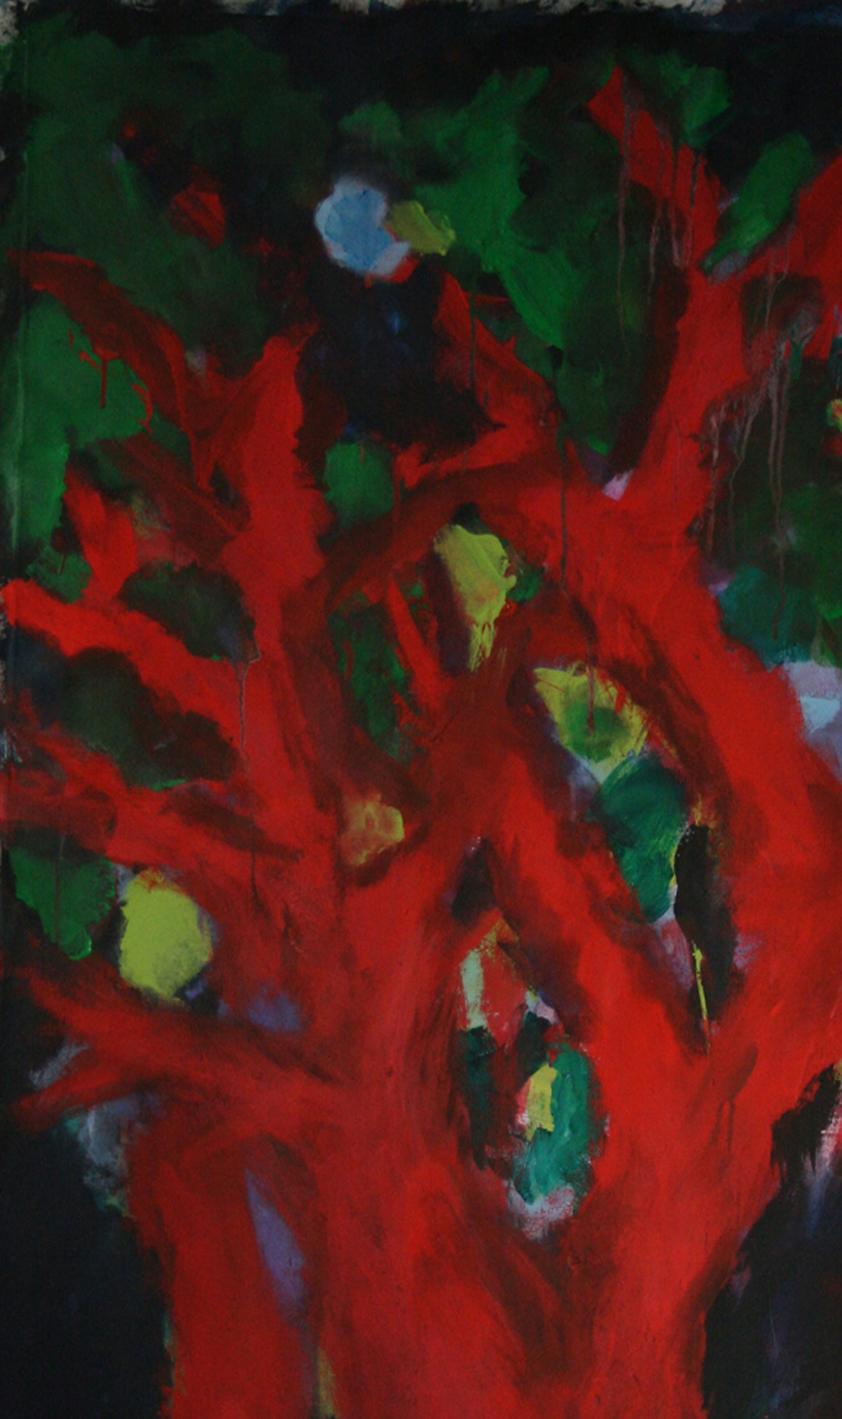 Nathalie Fontenoy, Französische Künstlerin, Gemälde „Arbre“, 7 Baum auf Leinwand (Abstrakter Expressionismus), Painting, von Nathalie Fontenoy 